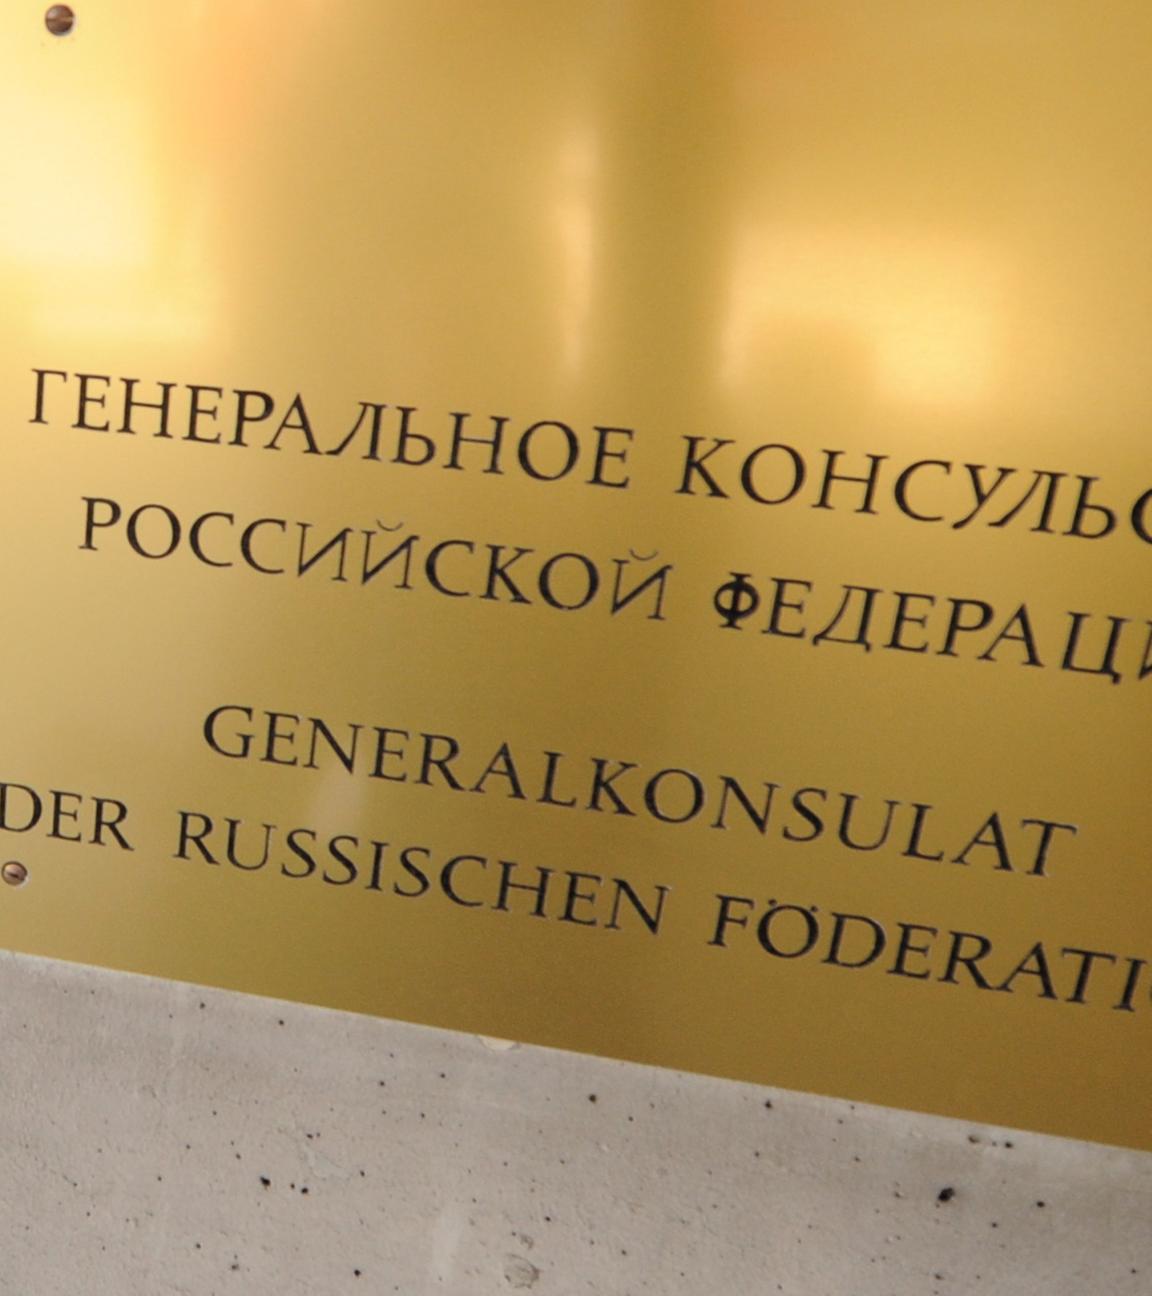 Russisches Generalkonsulat